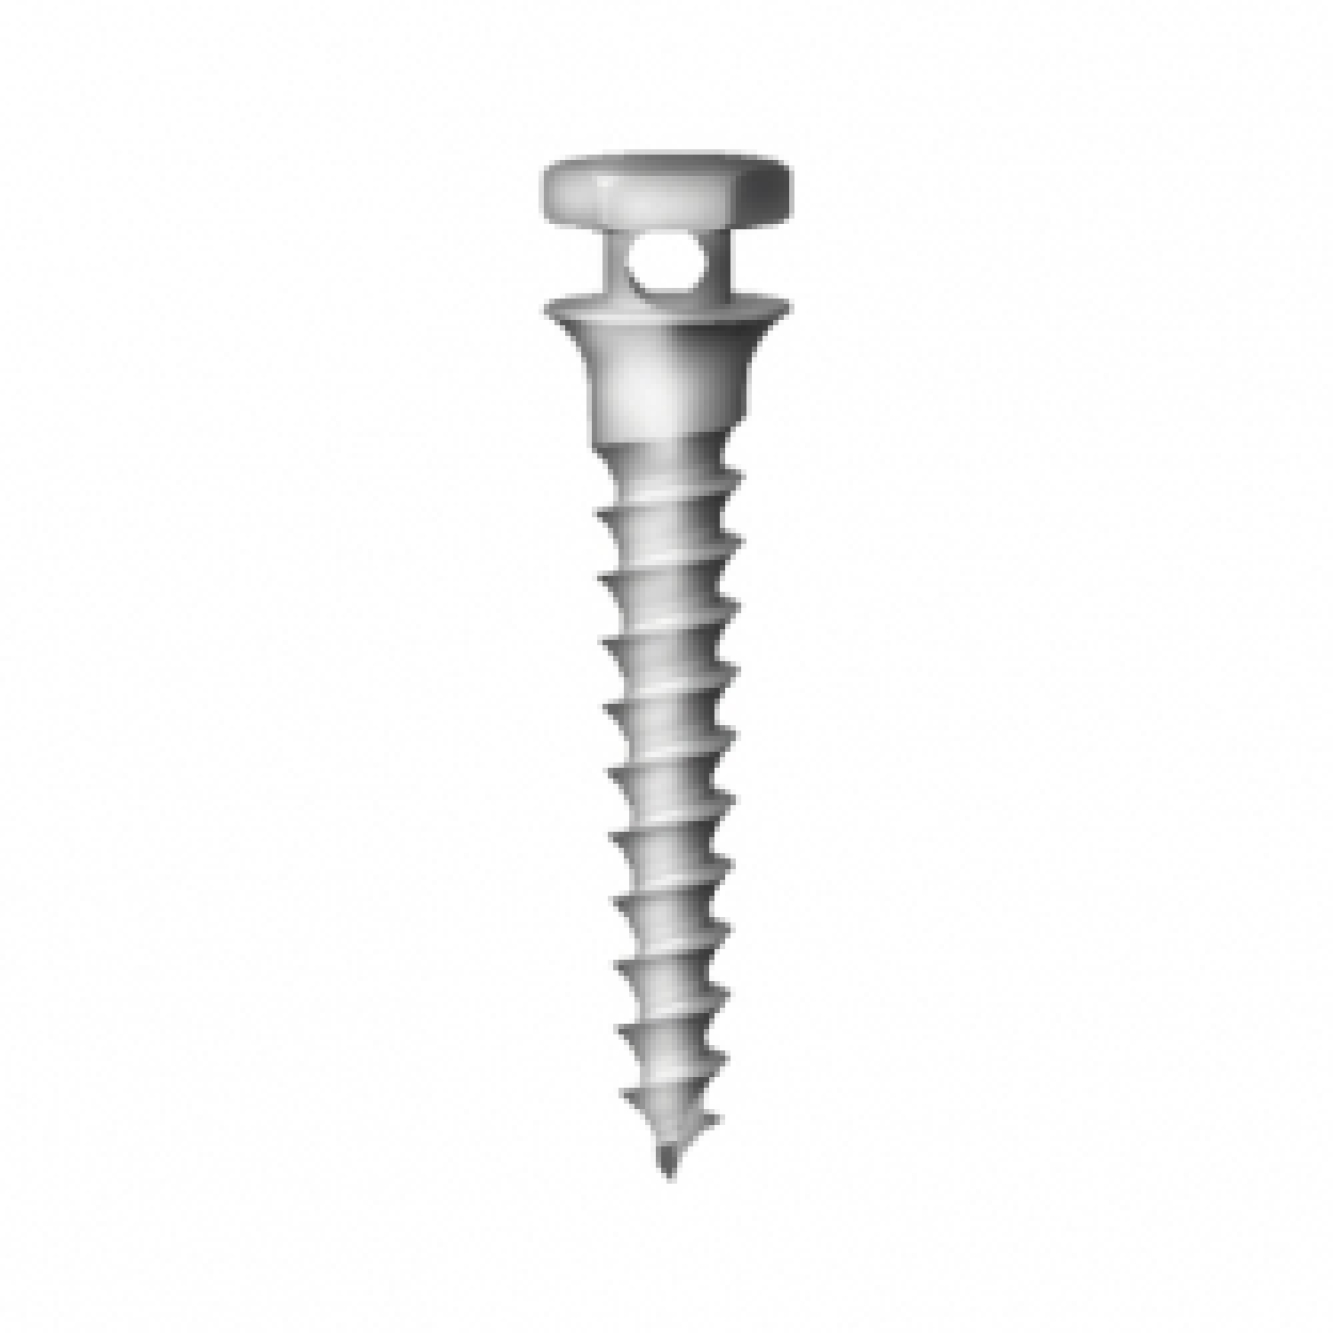 OS-S-16-006 Стоматологический ортодонтический винт для эластичной тяги и проволоки, диаметр 1.6 мм, длина 6 мм, Mr.Curette Tech, Южная Корея